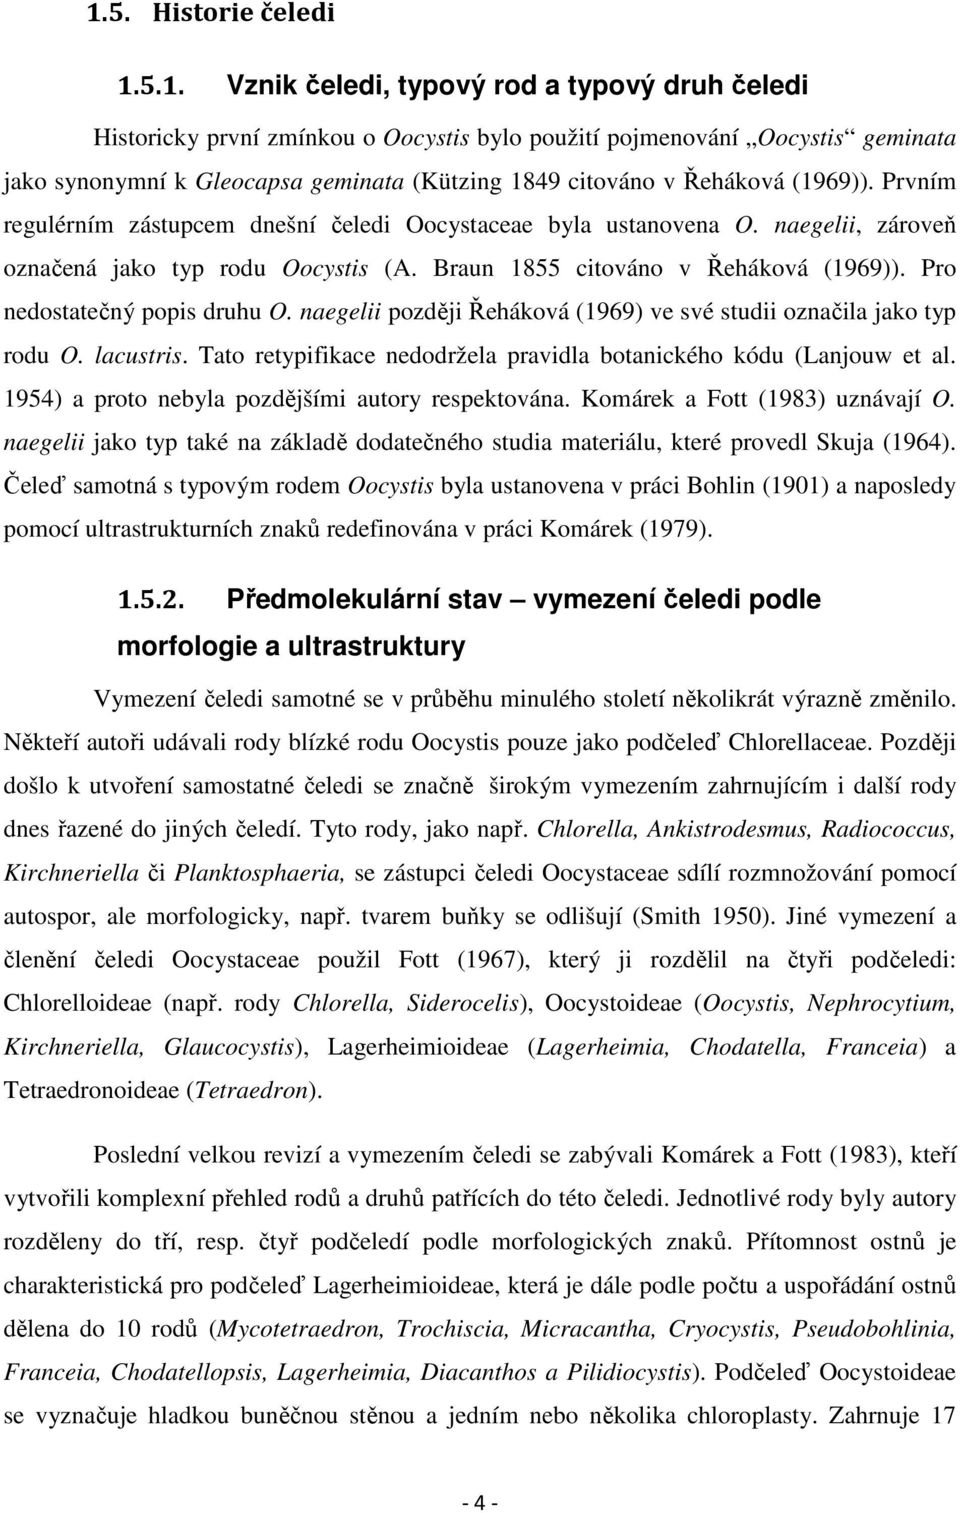 Pro nedostatečný popis druhu O. naegelii později Řeháková (1969) ve své studii označila jako typ rodu O. lacustris. Tato retypifikace nedodržela pravidla botanického kódu (Lanjouw et al.